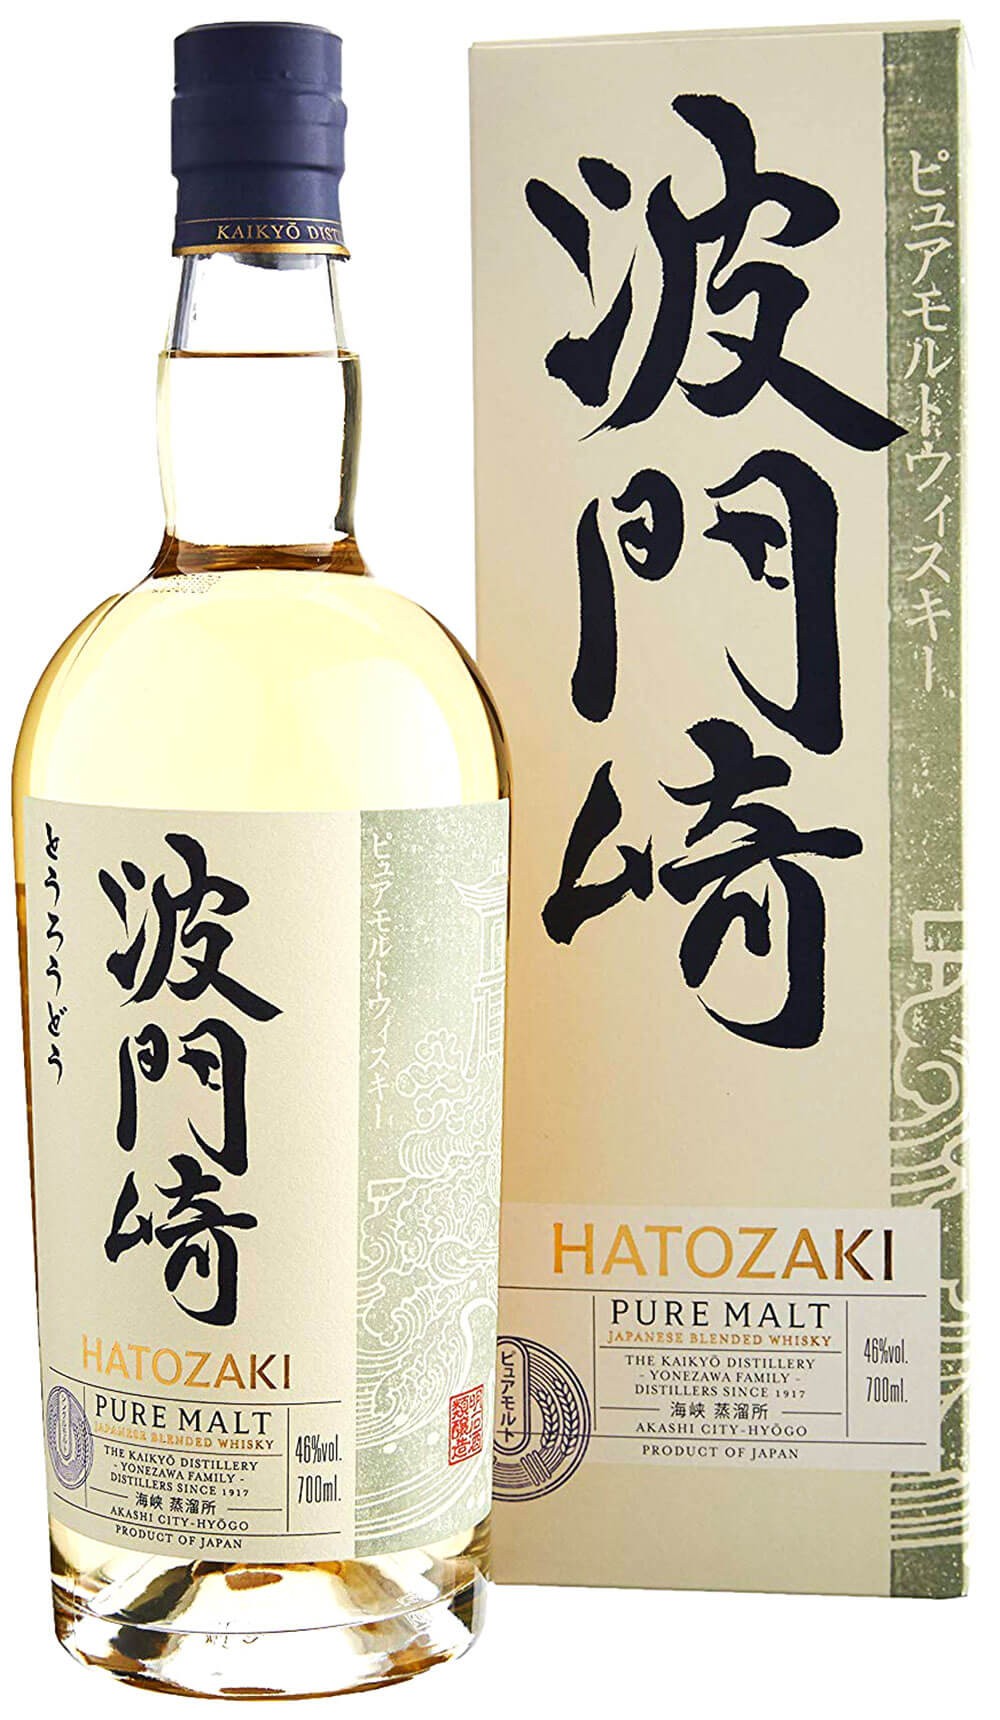 malt case hatozaki cl.70 with whisky kaikyo